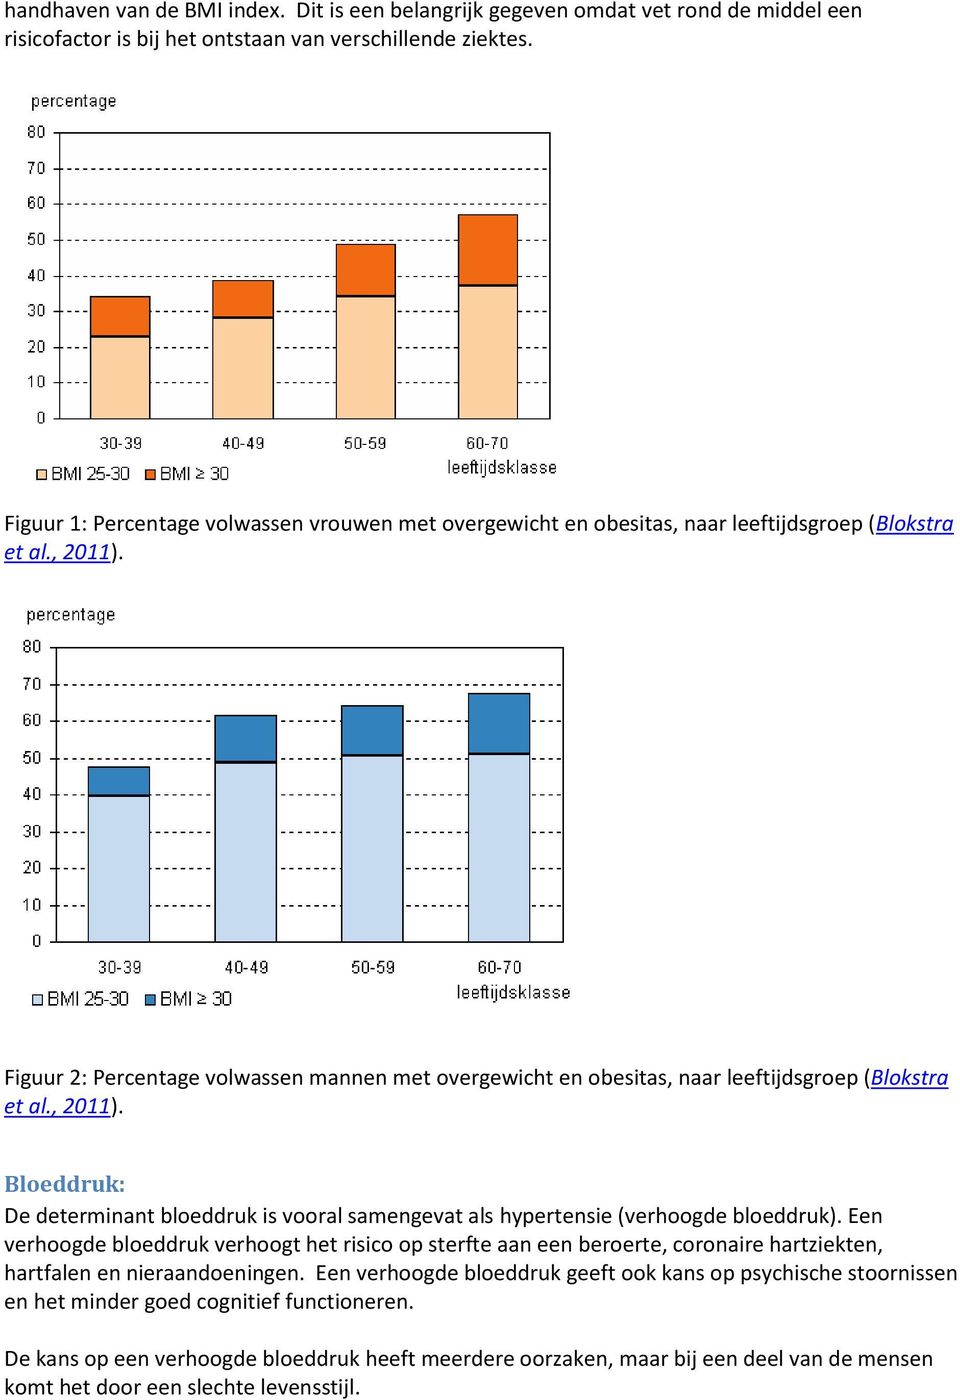 Figuur 2: Percentage volwassen mannen met overgewicht en obesitas, naar leeftijdsgroep (Blokstra et al., 2011).